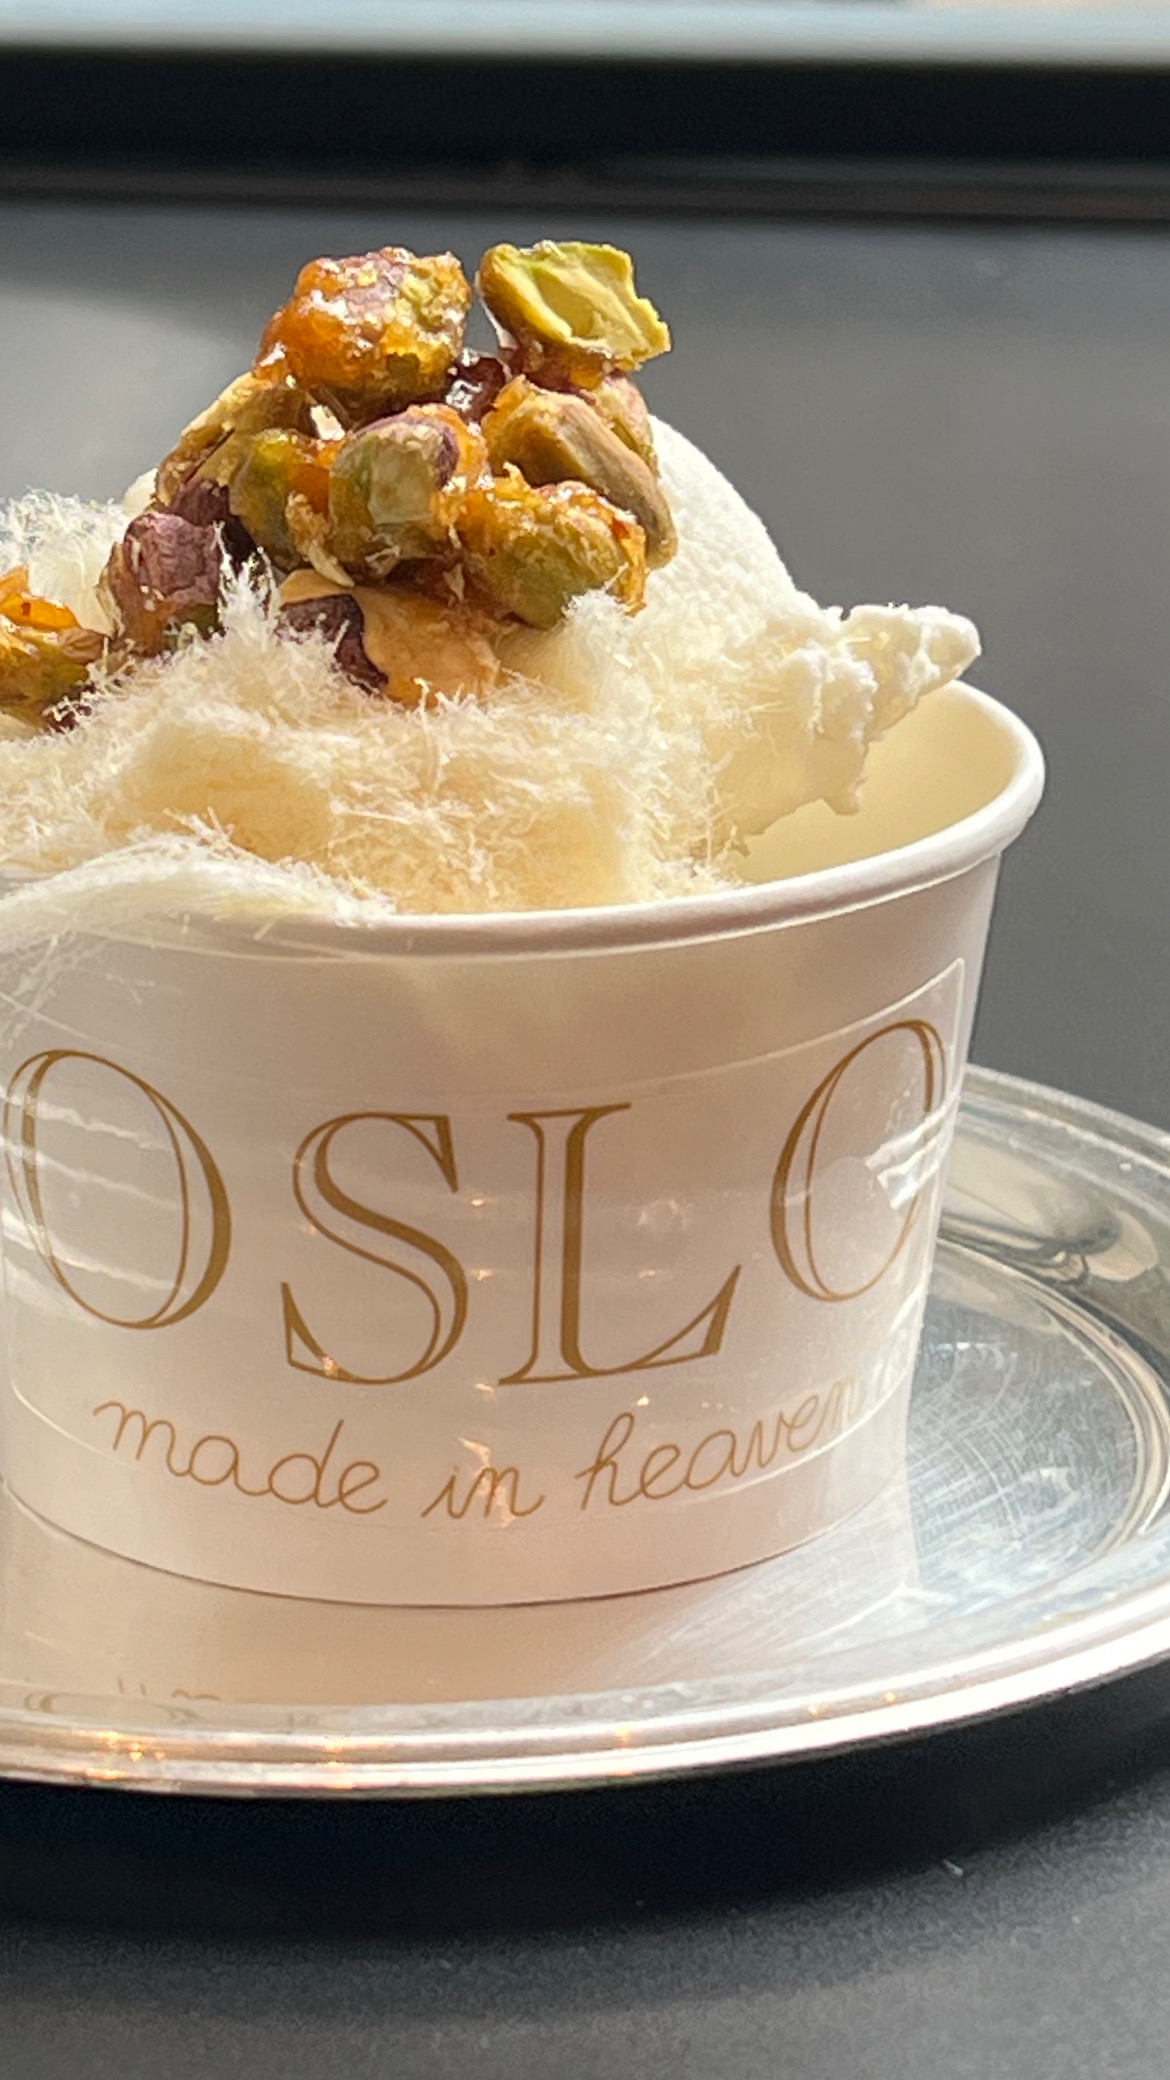 Oslo ice cream with pistachios